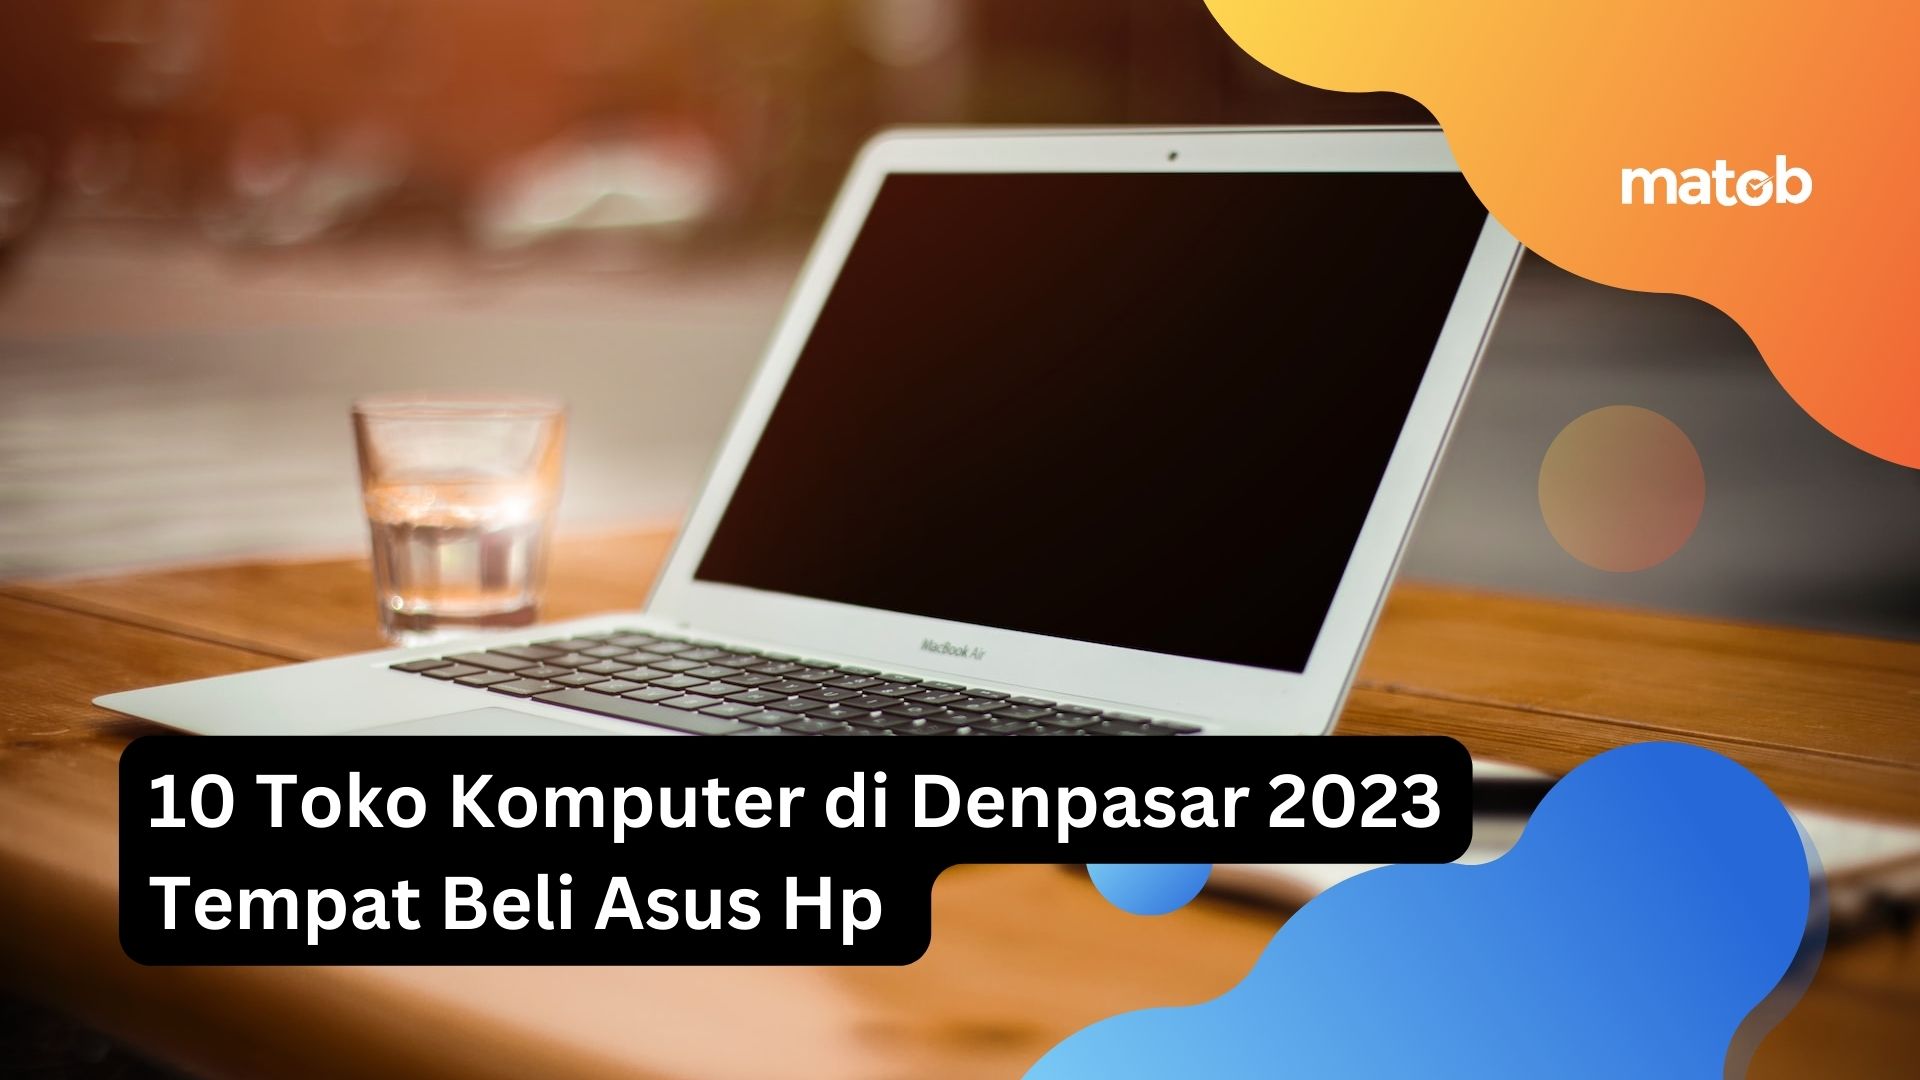 10 Toko Komputer di Denpasar 2023 Tempat Beli Asus Hp